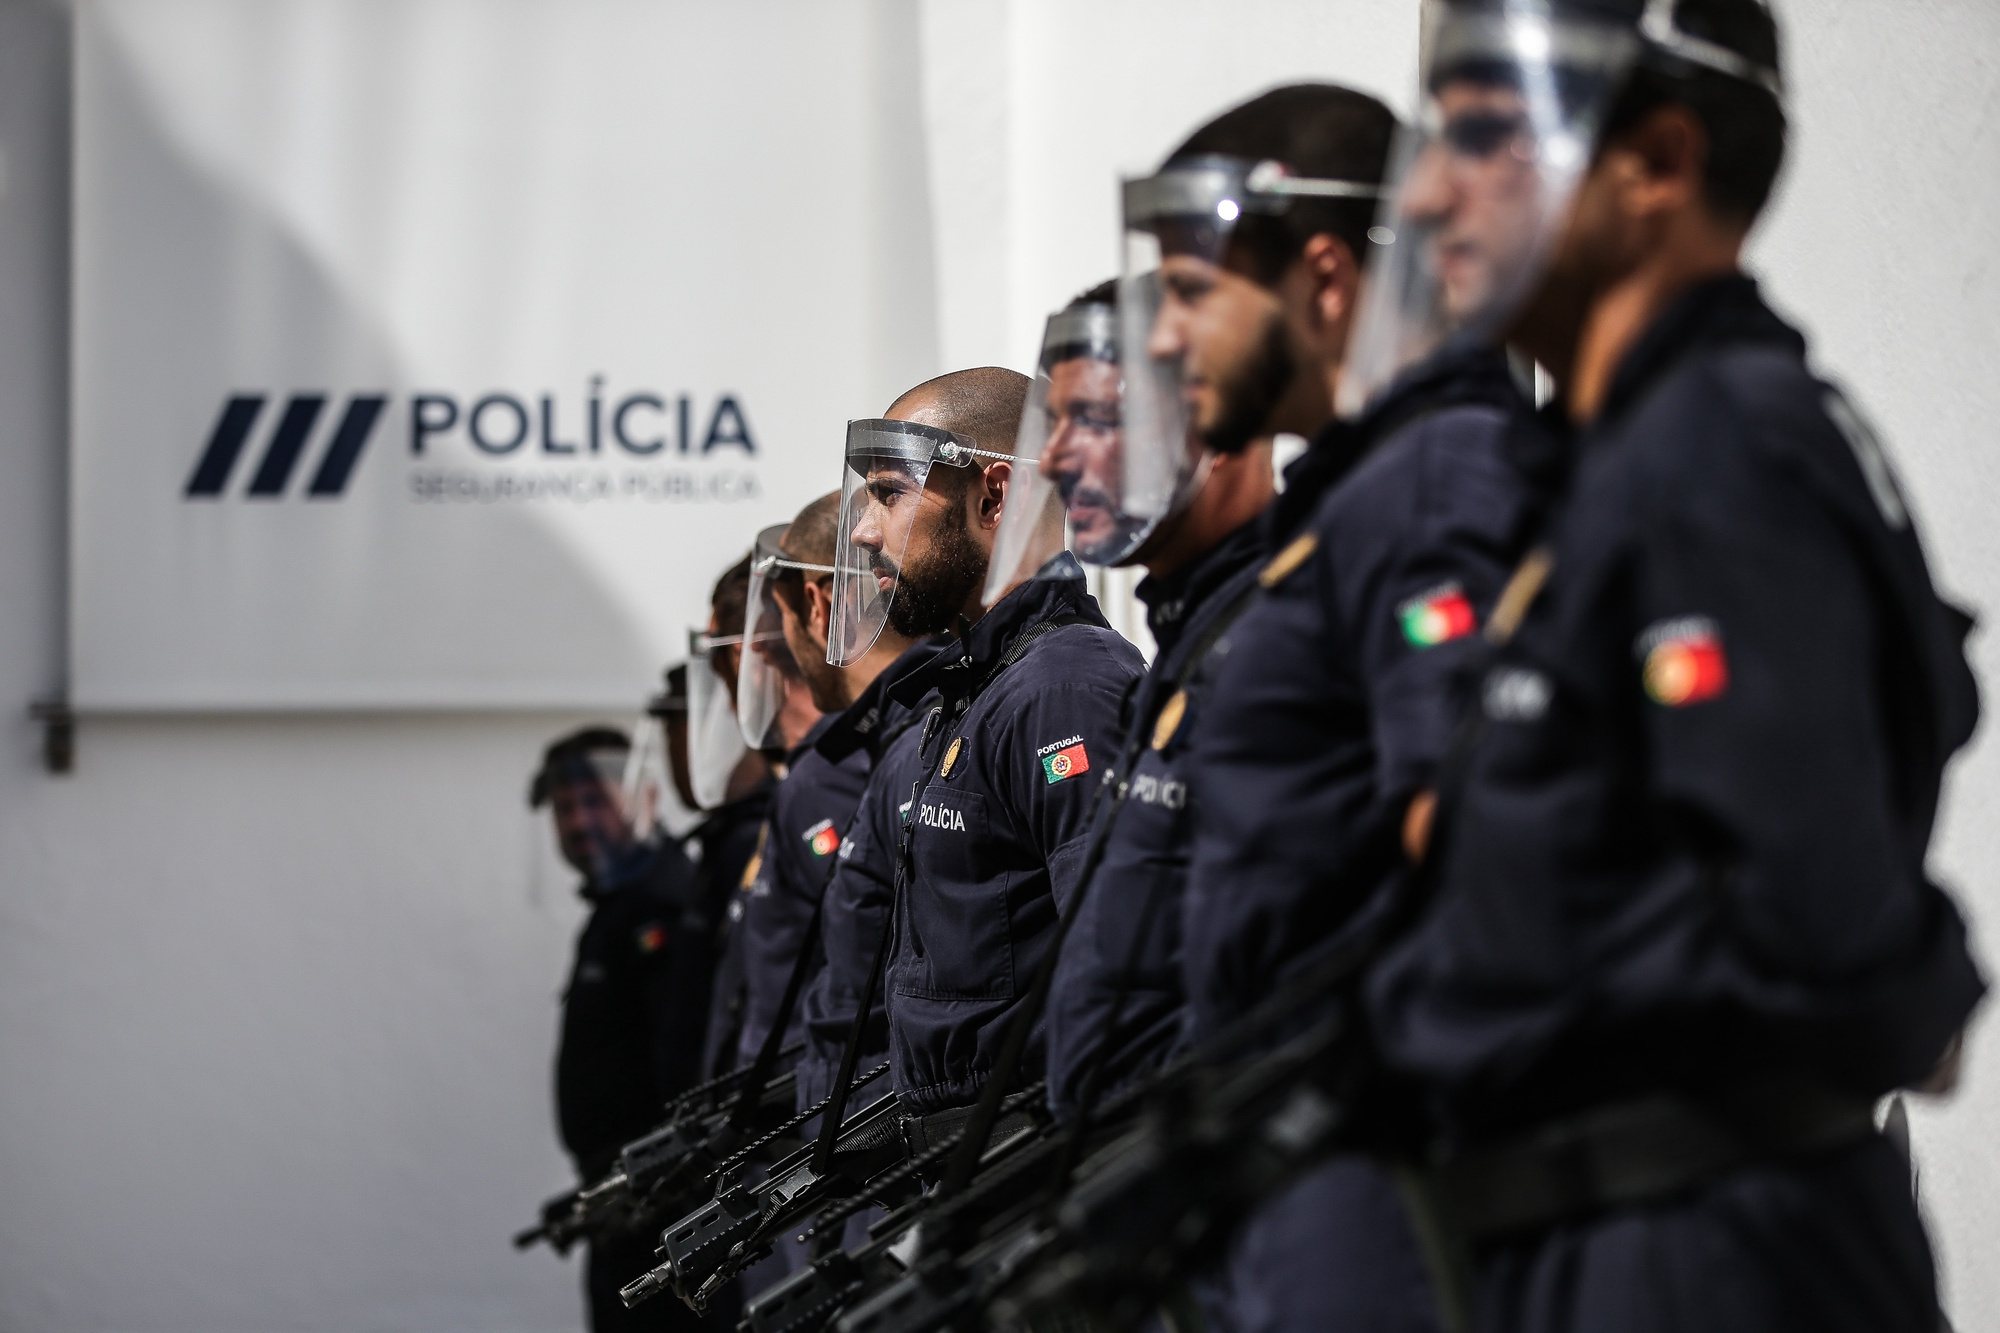 Cerimónia comemorativa do 153.º Aniversário da Polícia de Segurança Pública (PSP), Direção Nacional da PSP, em Lisboa, 2 de julho de 2020. MÁRIO CRUZ/LUSA